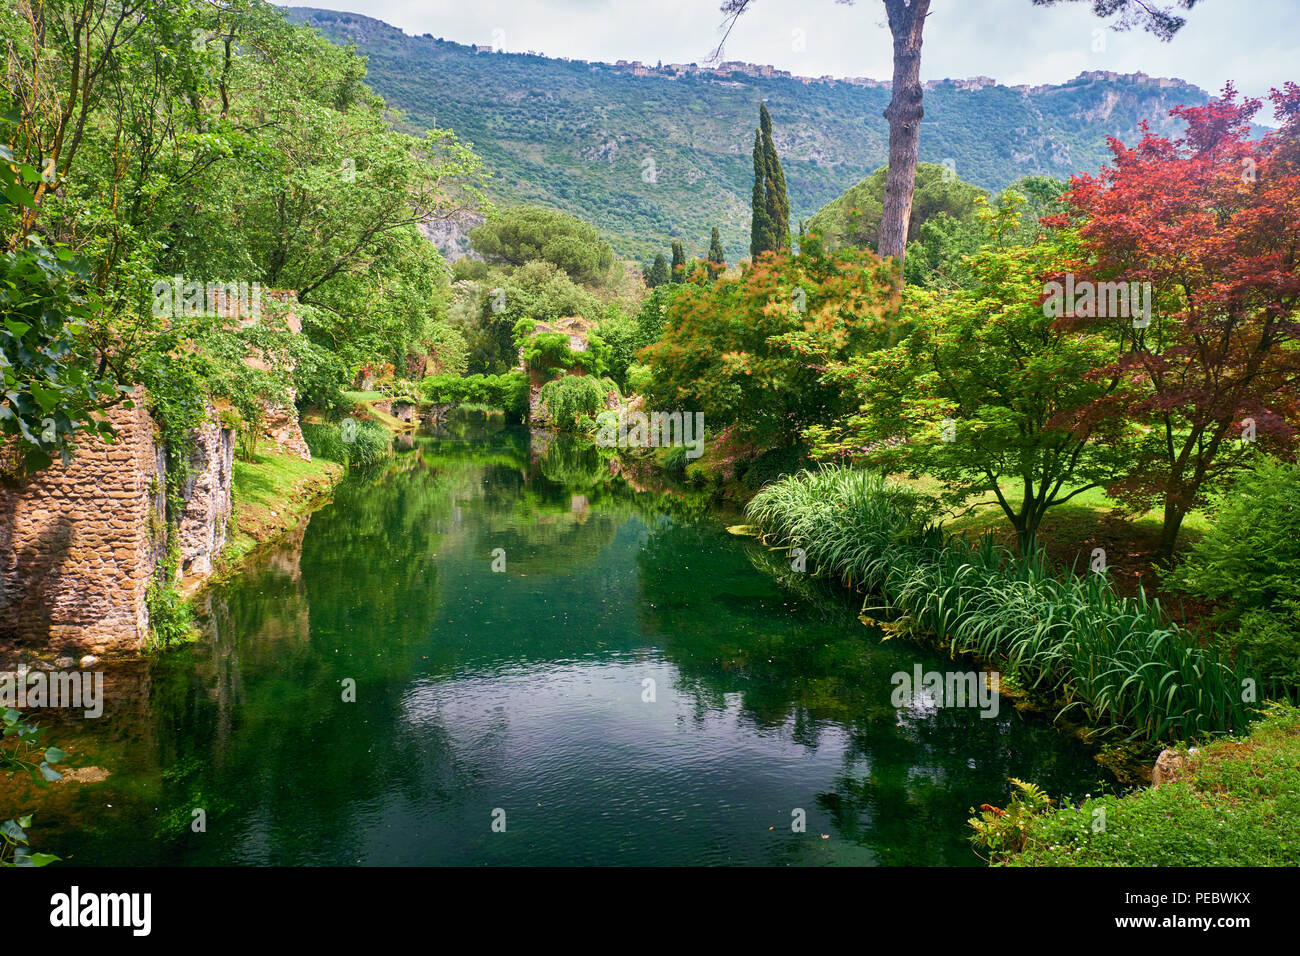 Creek in a Garden with Historic Ruins, Nimfa Garden, Cisterna di Latina, Italy Stock Photo